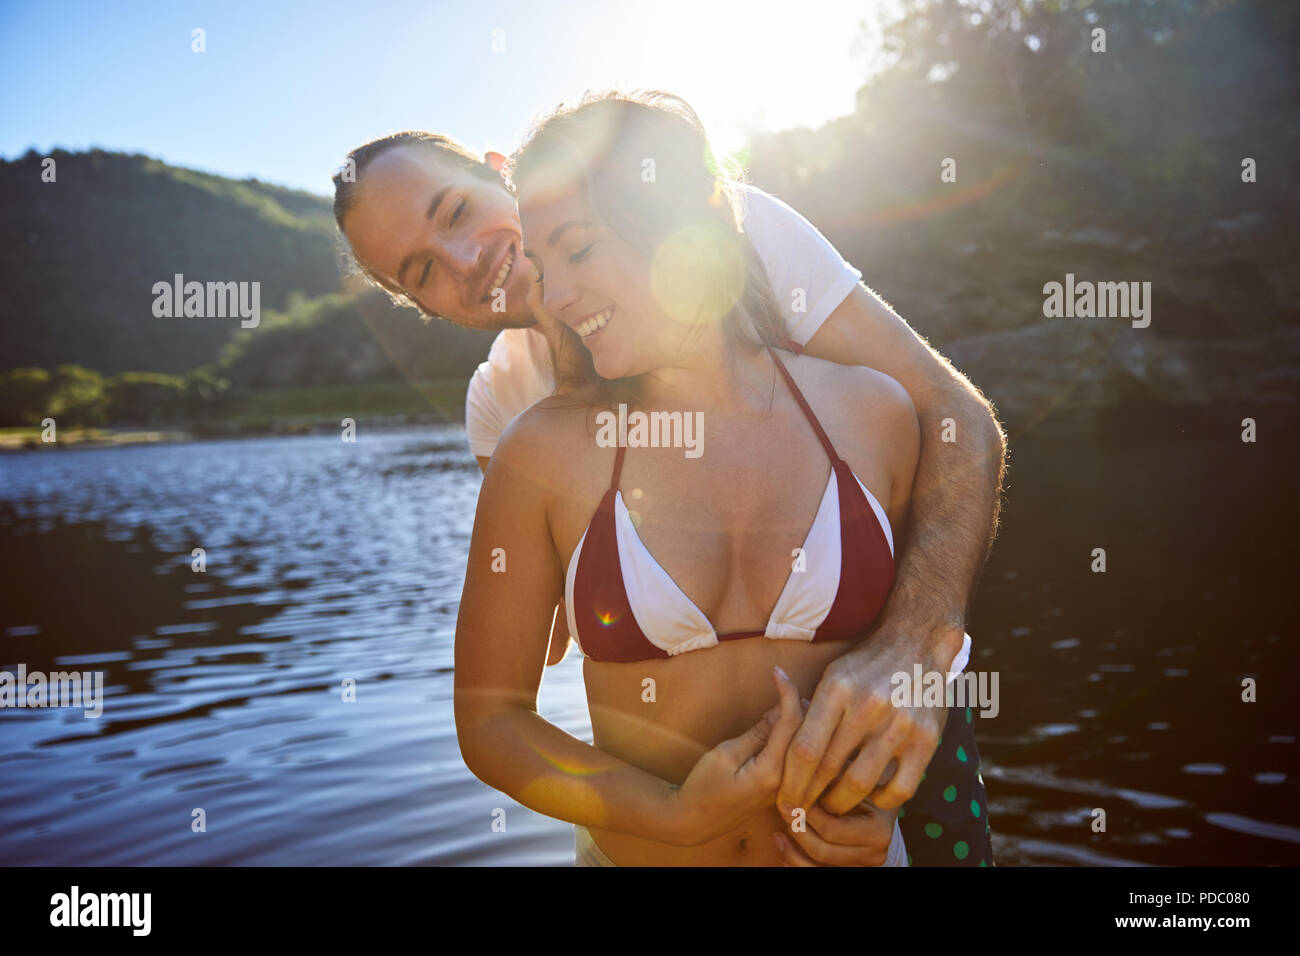 Affettuosa giovane costeggiata a sunny estate lago Foto Stock